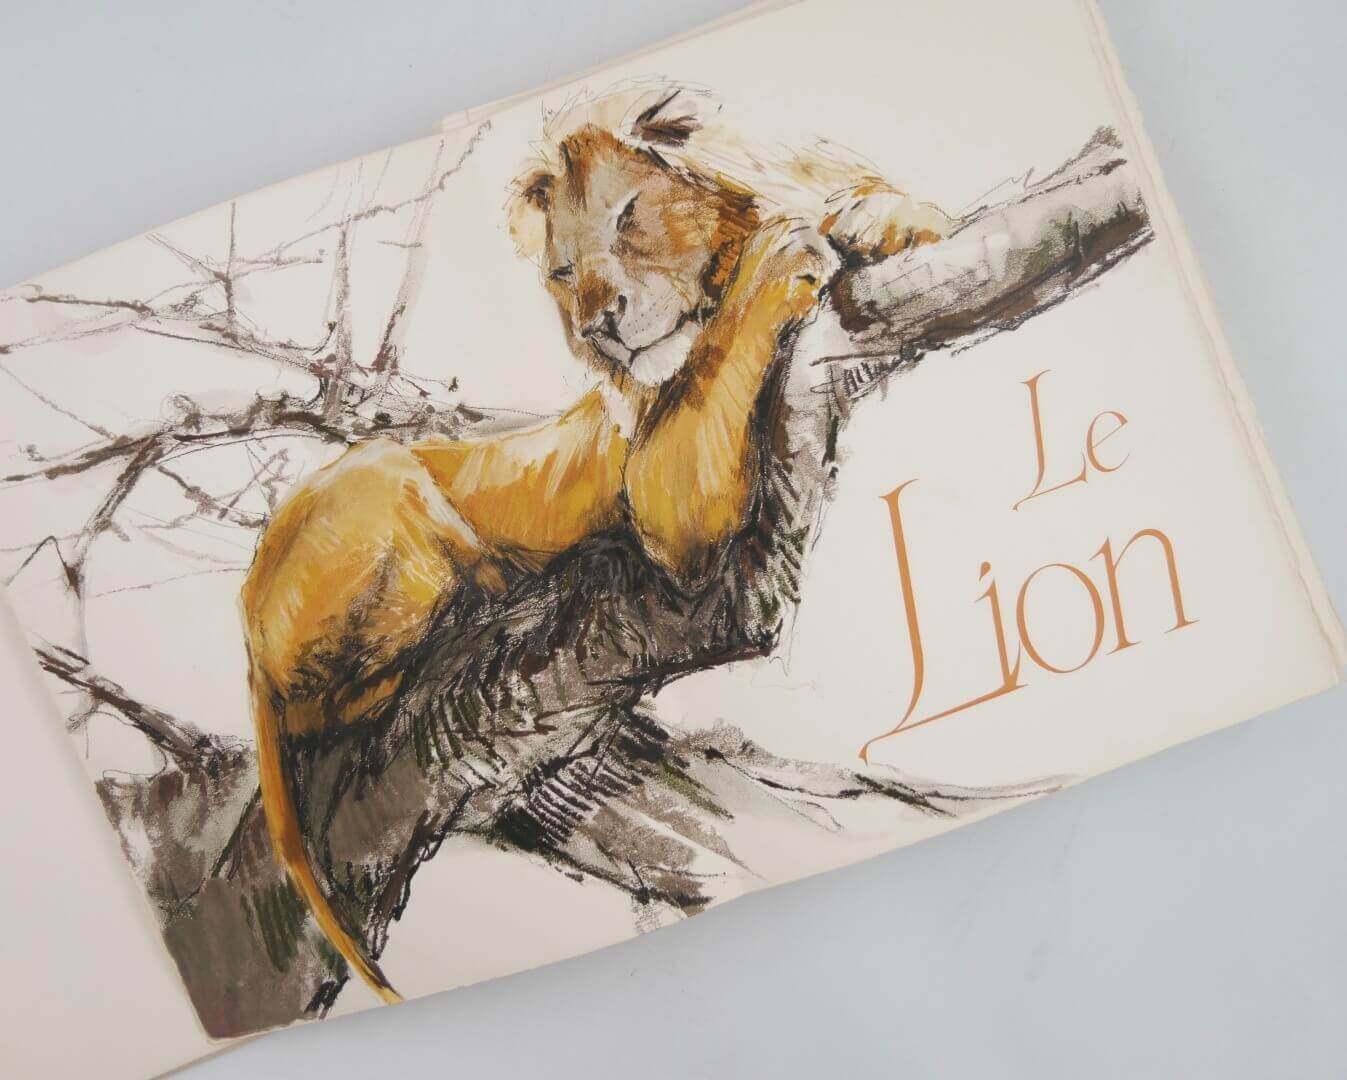 Joseph KESSEL - Pierre LETELLIER - Le lion - Léger éditeur d'art - 1958